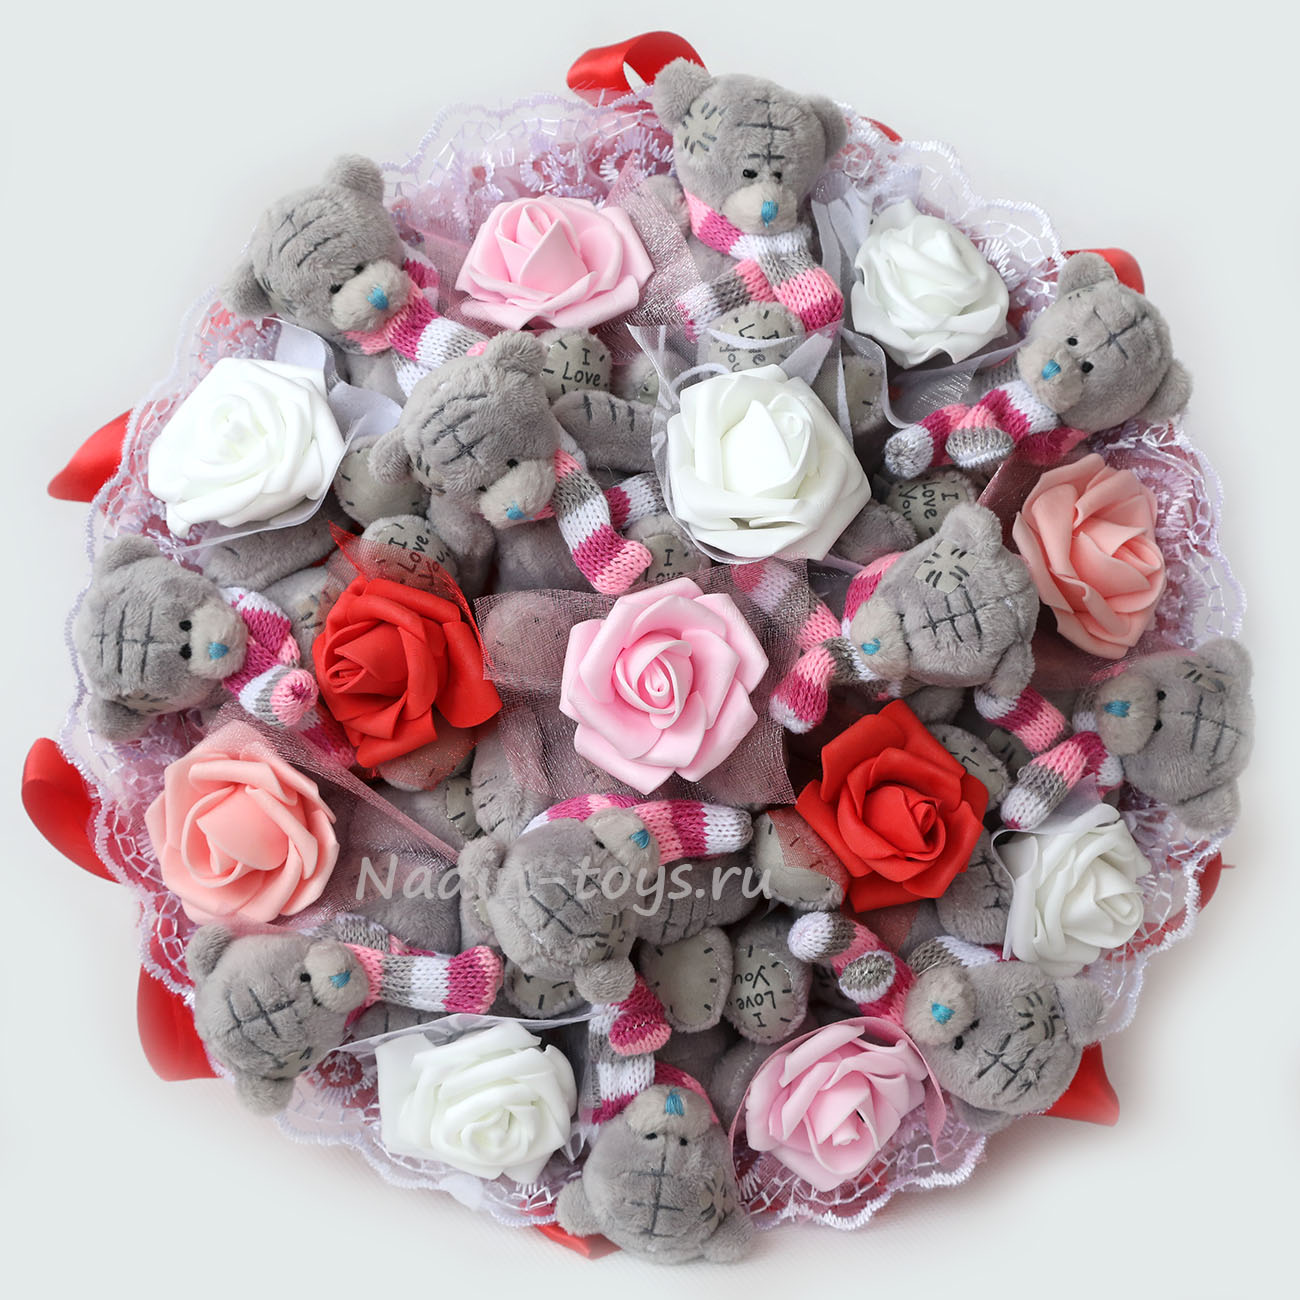 Букет из 11 плюшевых мишек Тедди и роз